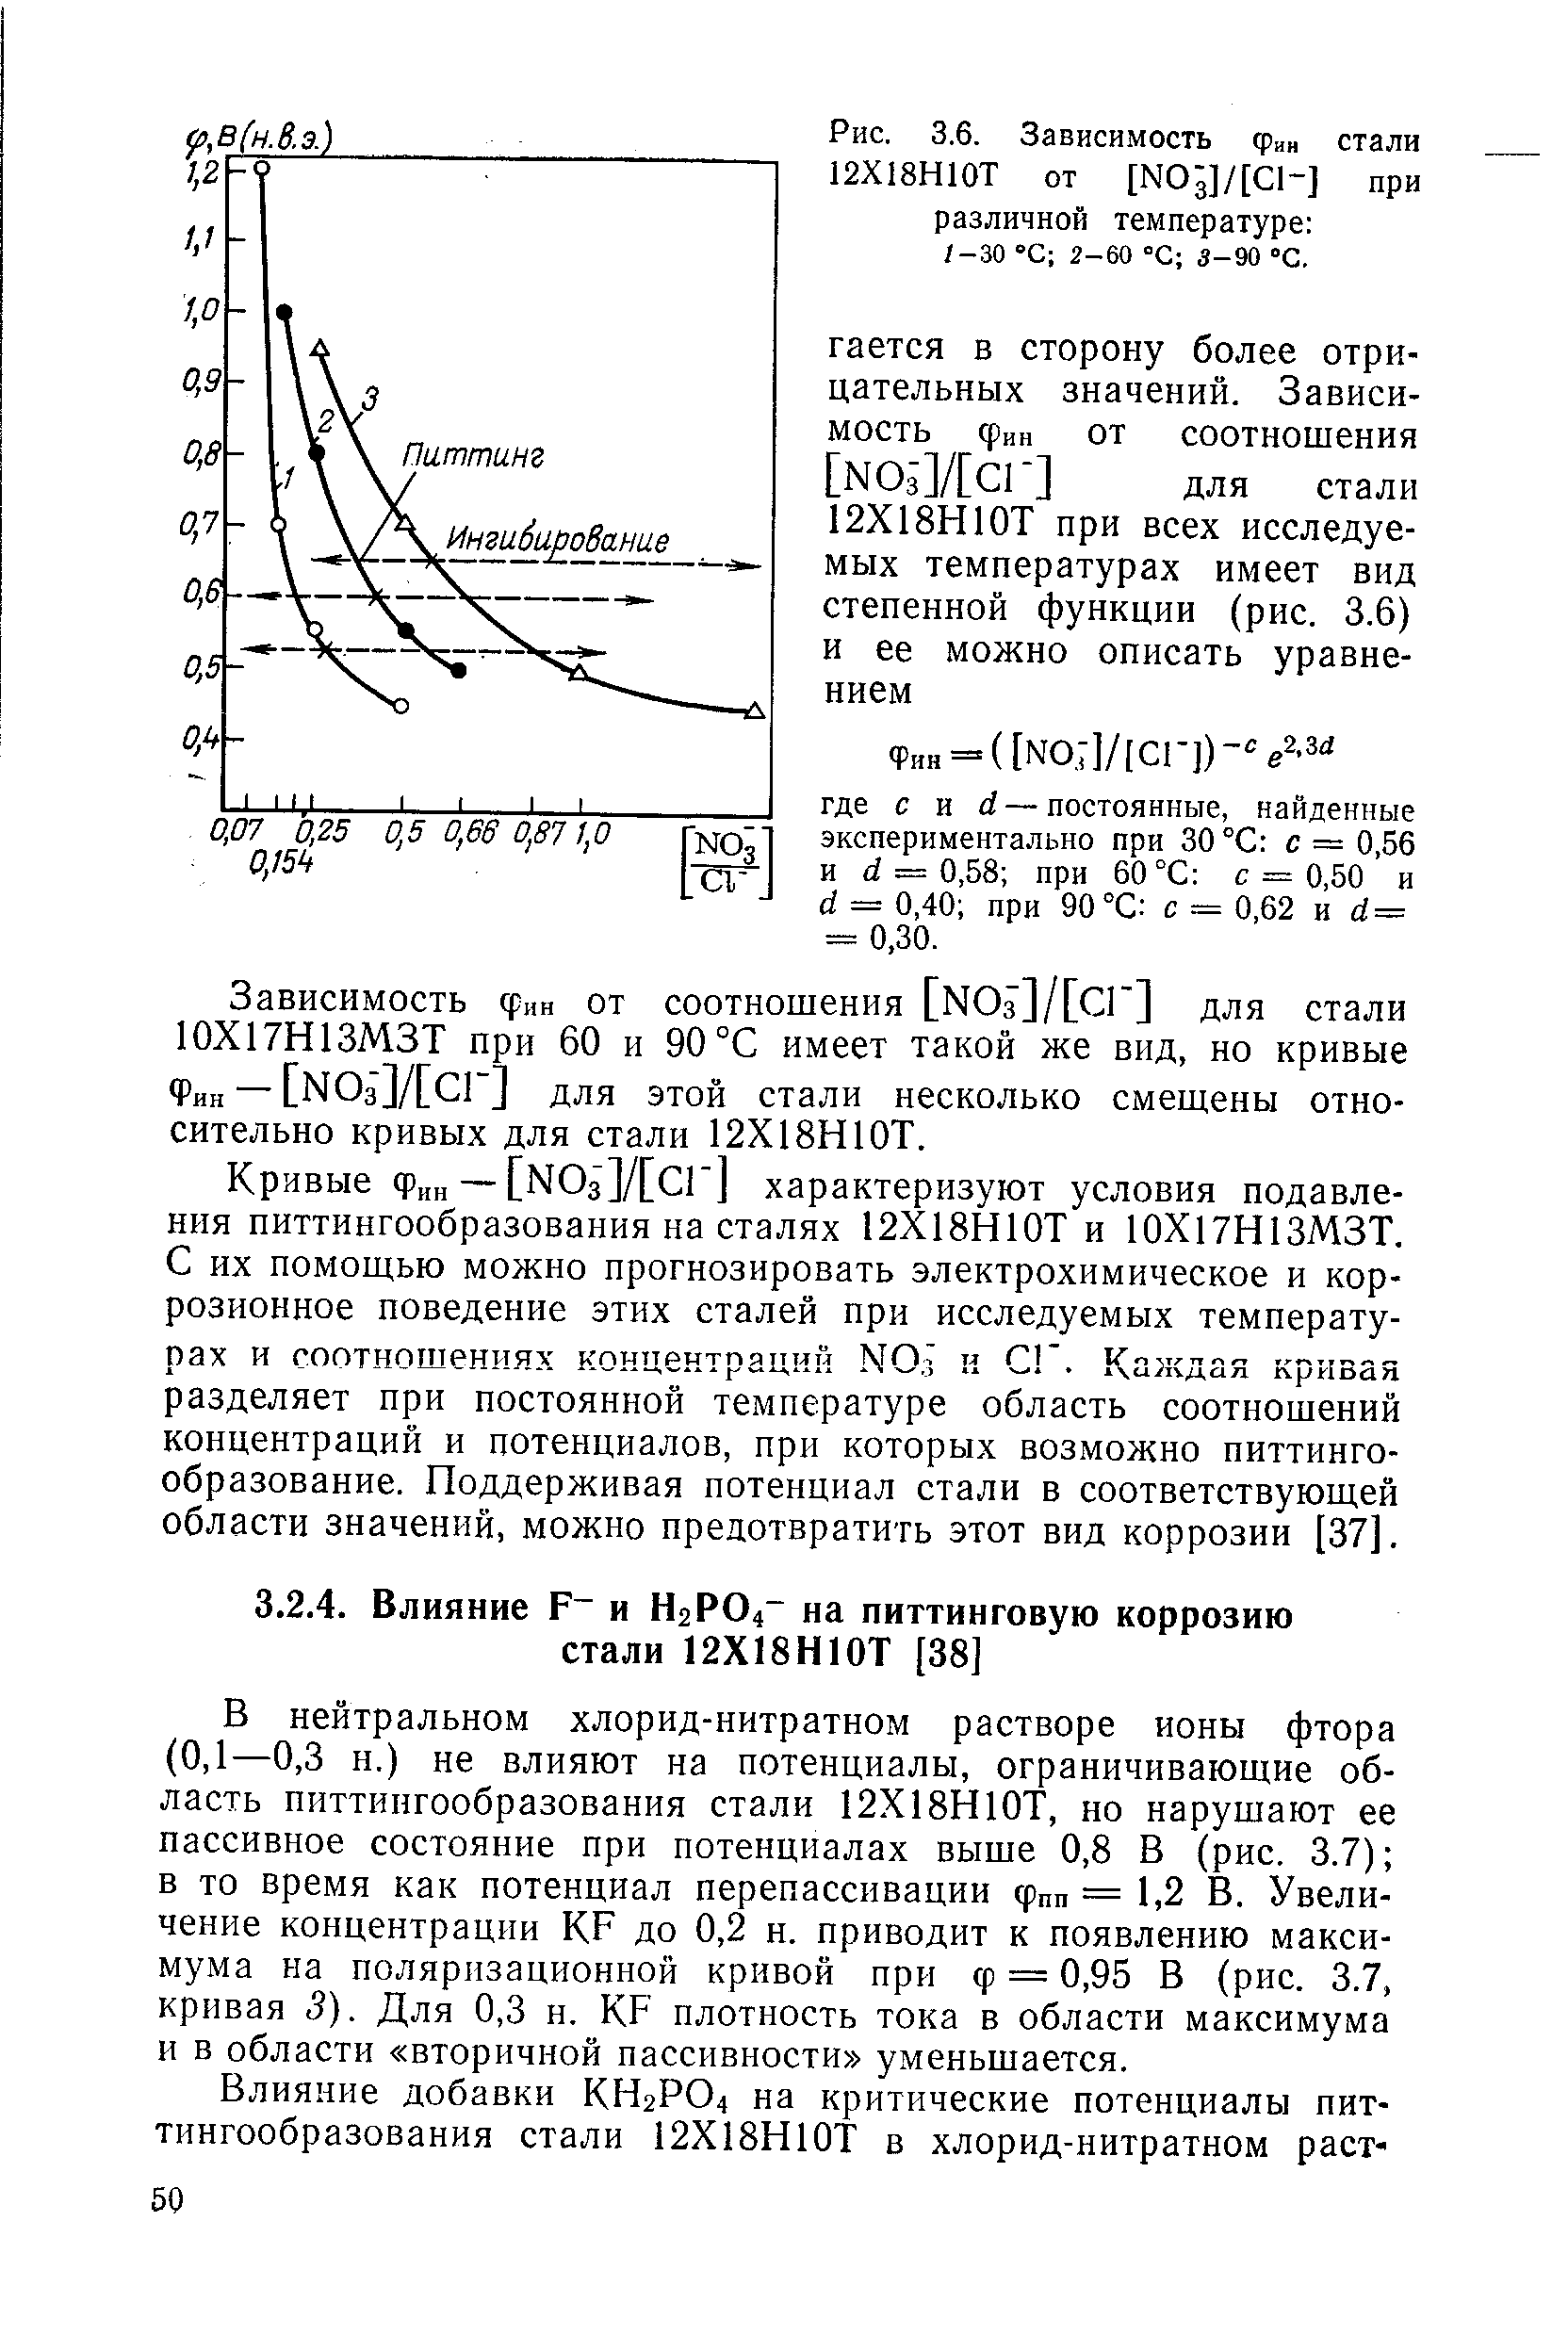 В нейтральном хлорид-нитратном растворе ионы фтора (0,1—0,3 и.) не влияют на потенциалы, ограничивающие область питтингообразования стали 12Х18Н10Т, но нарушают ее пассивное состояние при потенциалах выше 0,8 В (рис. 3.7) в то время как потенциал перепассивации фпп — 1,2 В. Увеличение концентрации KF до 0,2 н. приводит к появлению максимума на поляризационной кривой при ф = 0,95 В (рис. 3.7, кривая 5). Для 0,3 н. KF плотность тока в области максимума и в области вторичной пассивности уменьшается.
